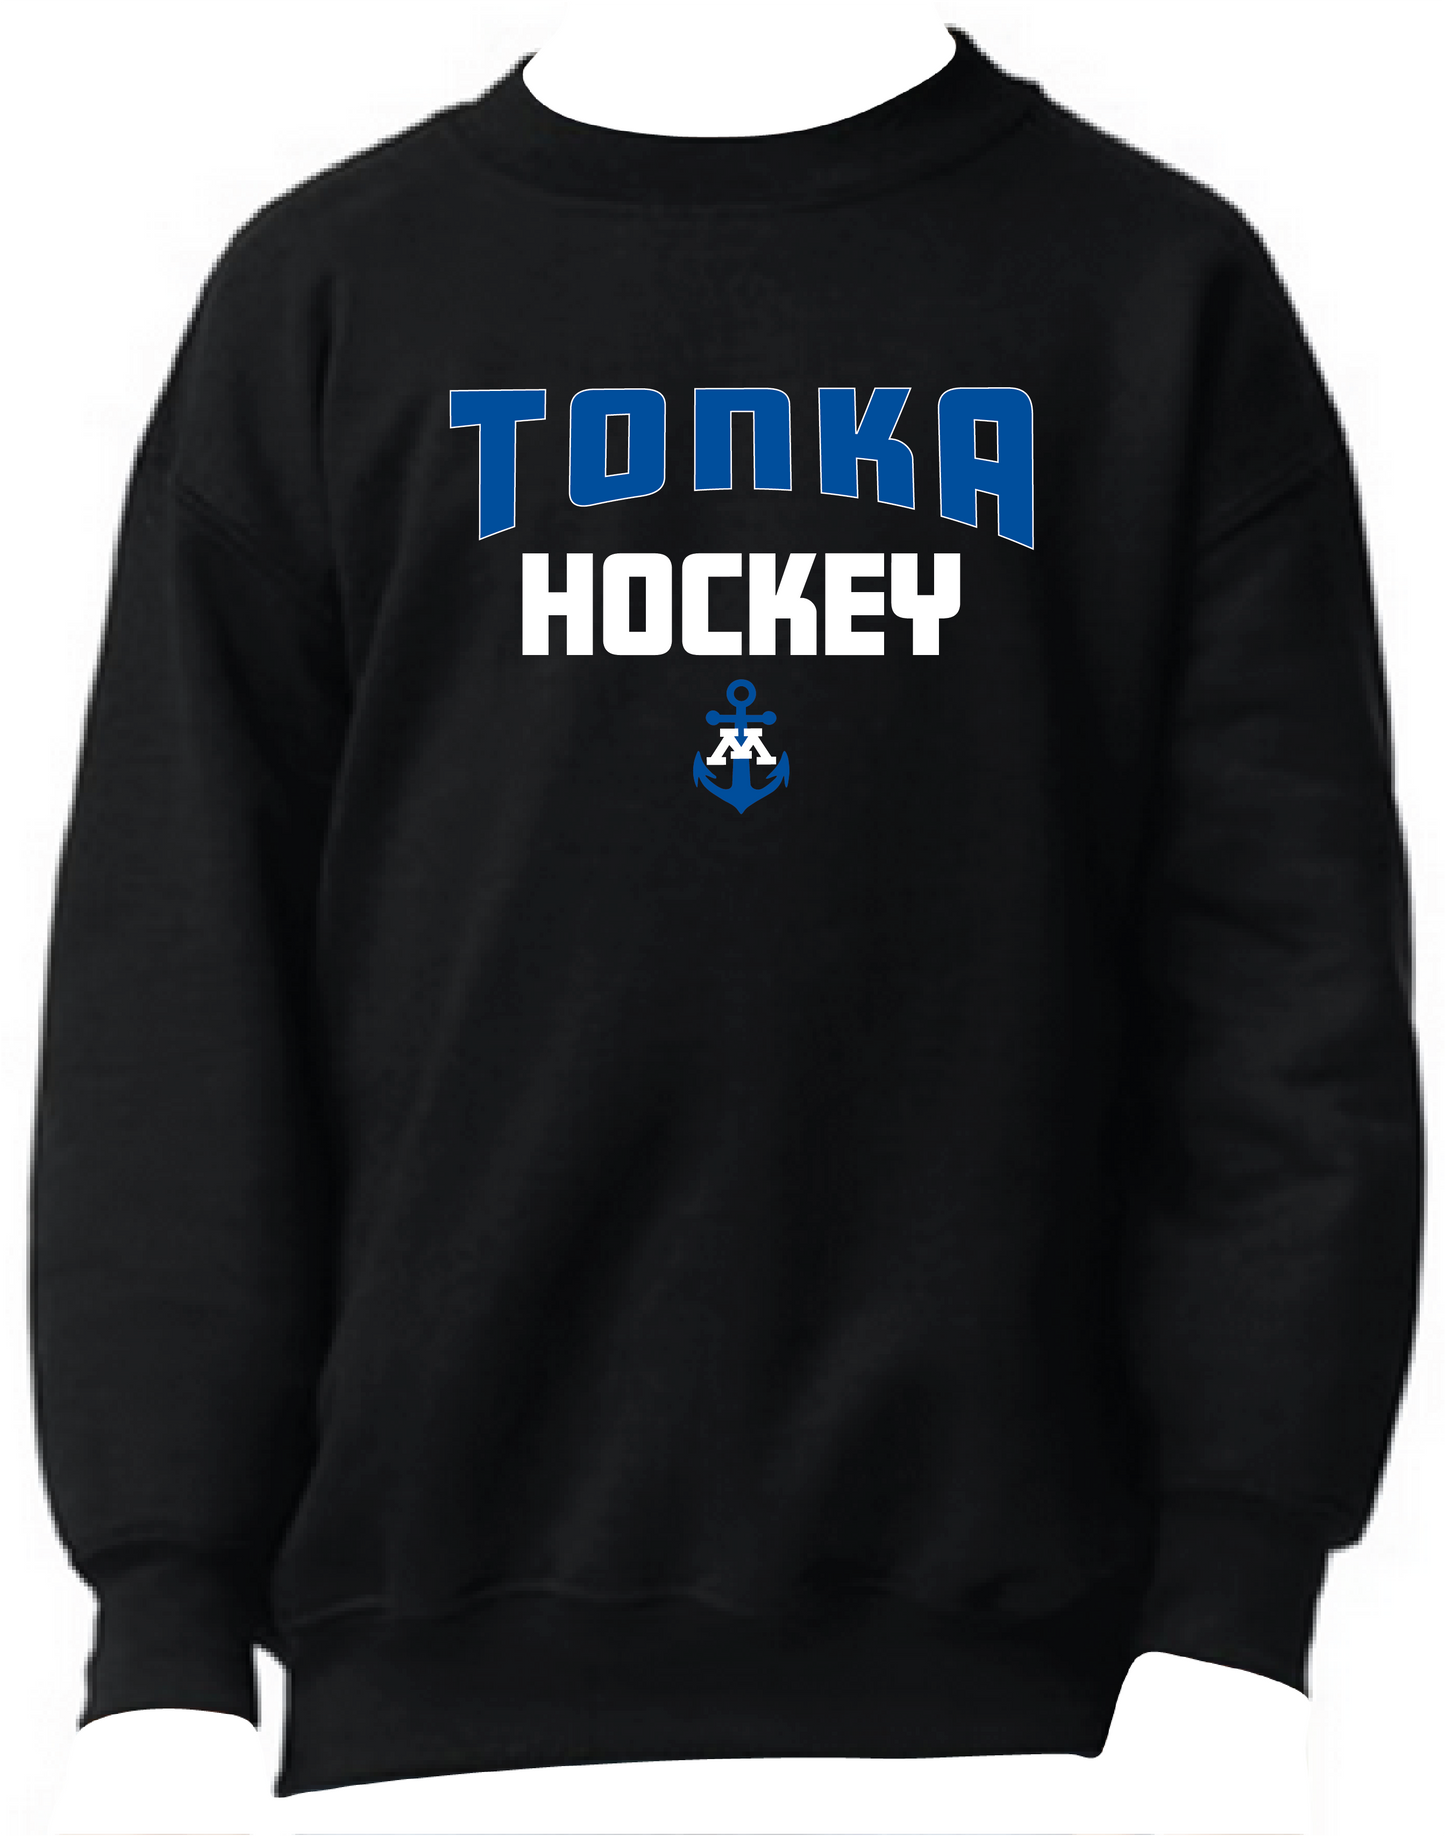 Tonka Hockey Small Anchor Black